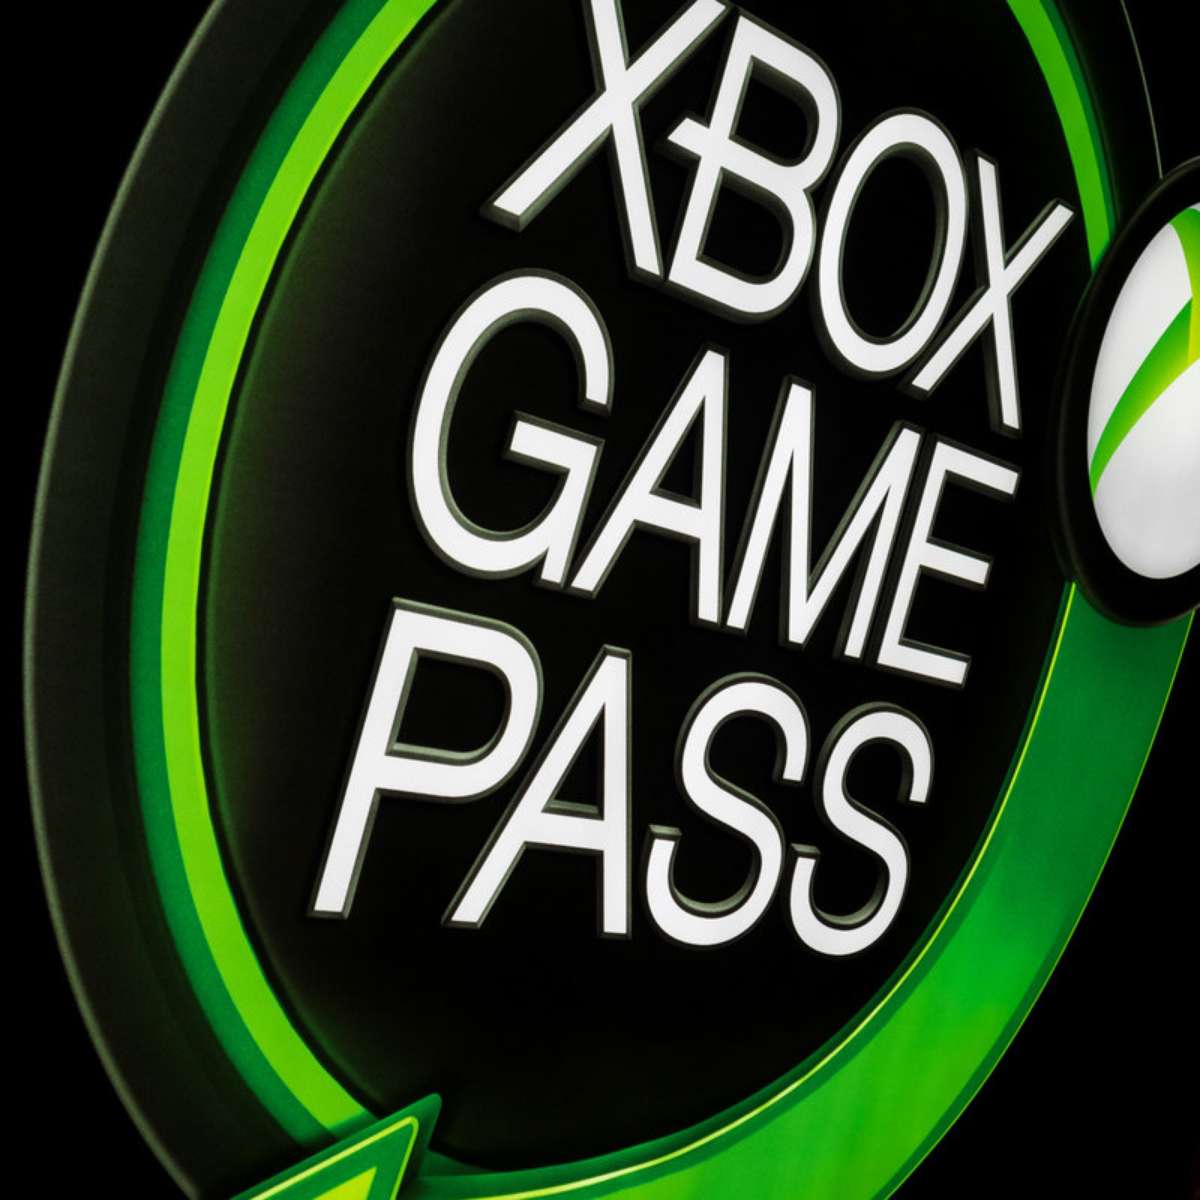 Pessoas jogam 40% mais depois de assinar Xbox Game Pass, diz Microsoft